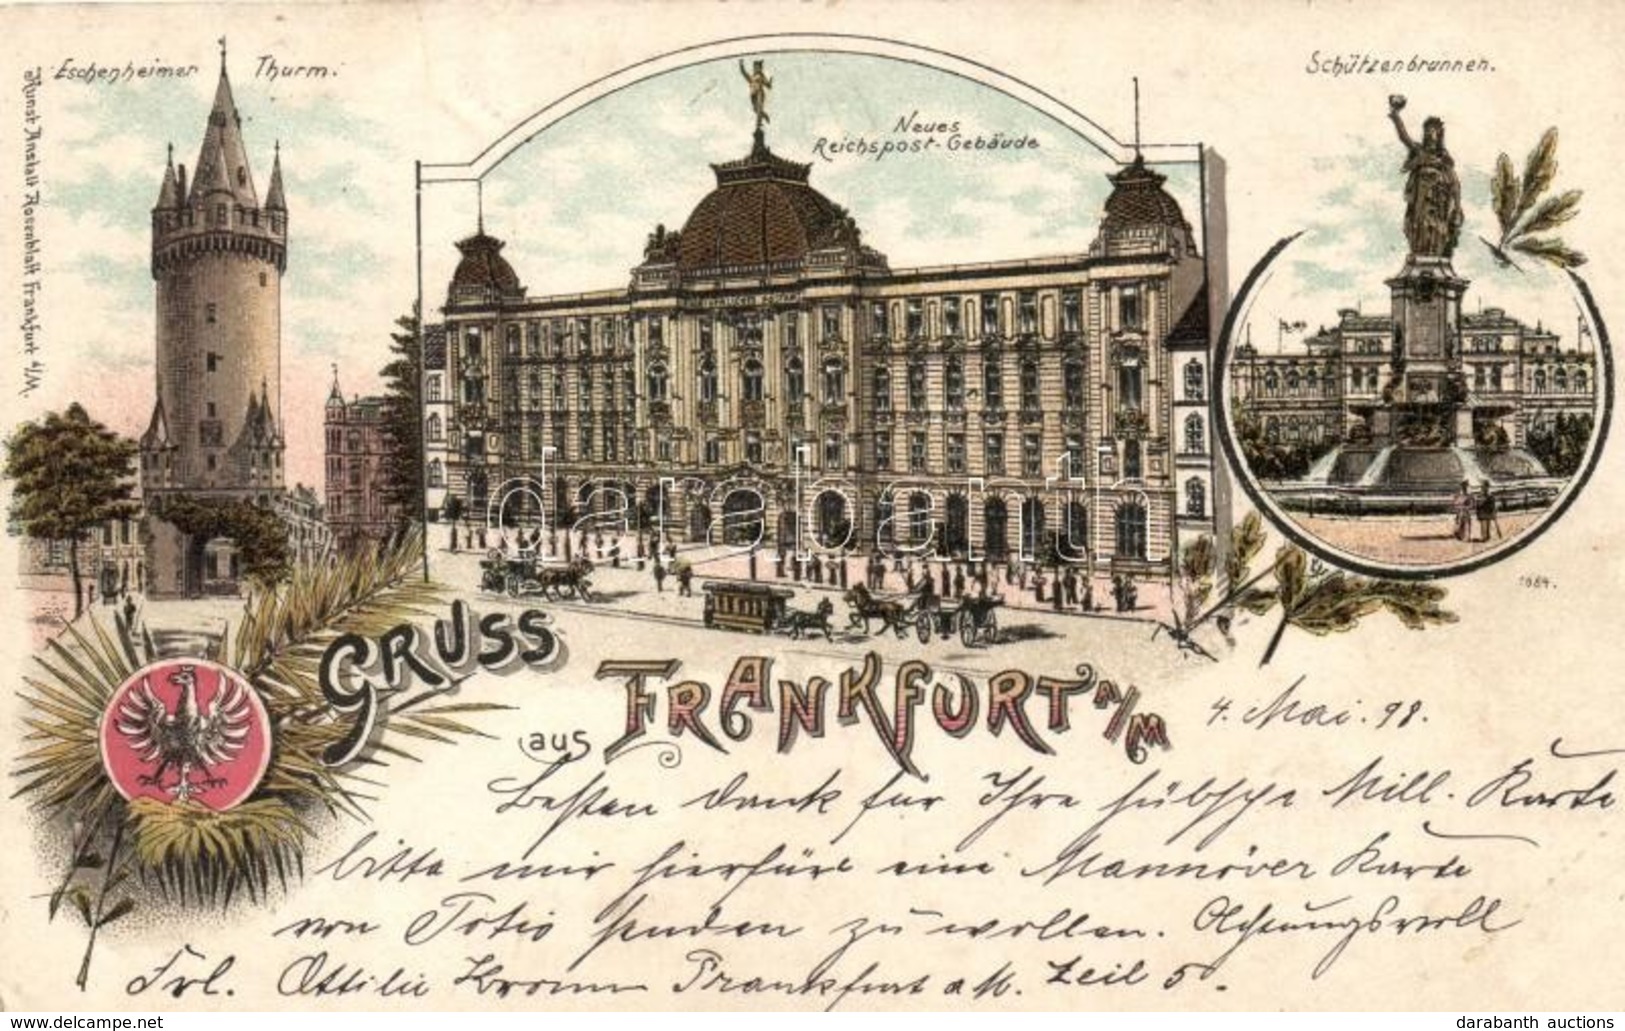 T2/T3 1898 Frankfurt, Eschenheimer Thurm, Neues Reichspost-Gebaude, Schützenbrunnen / Tower, Post Office, Fountain, Kuns - Ohne Zuordnung